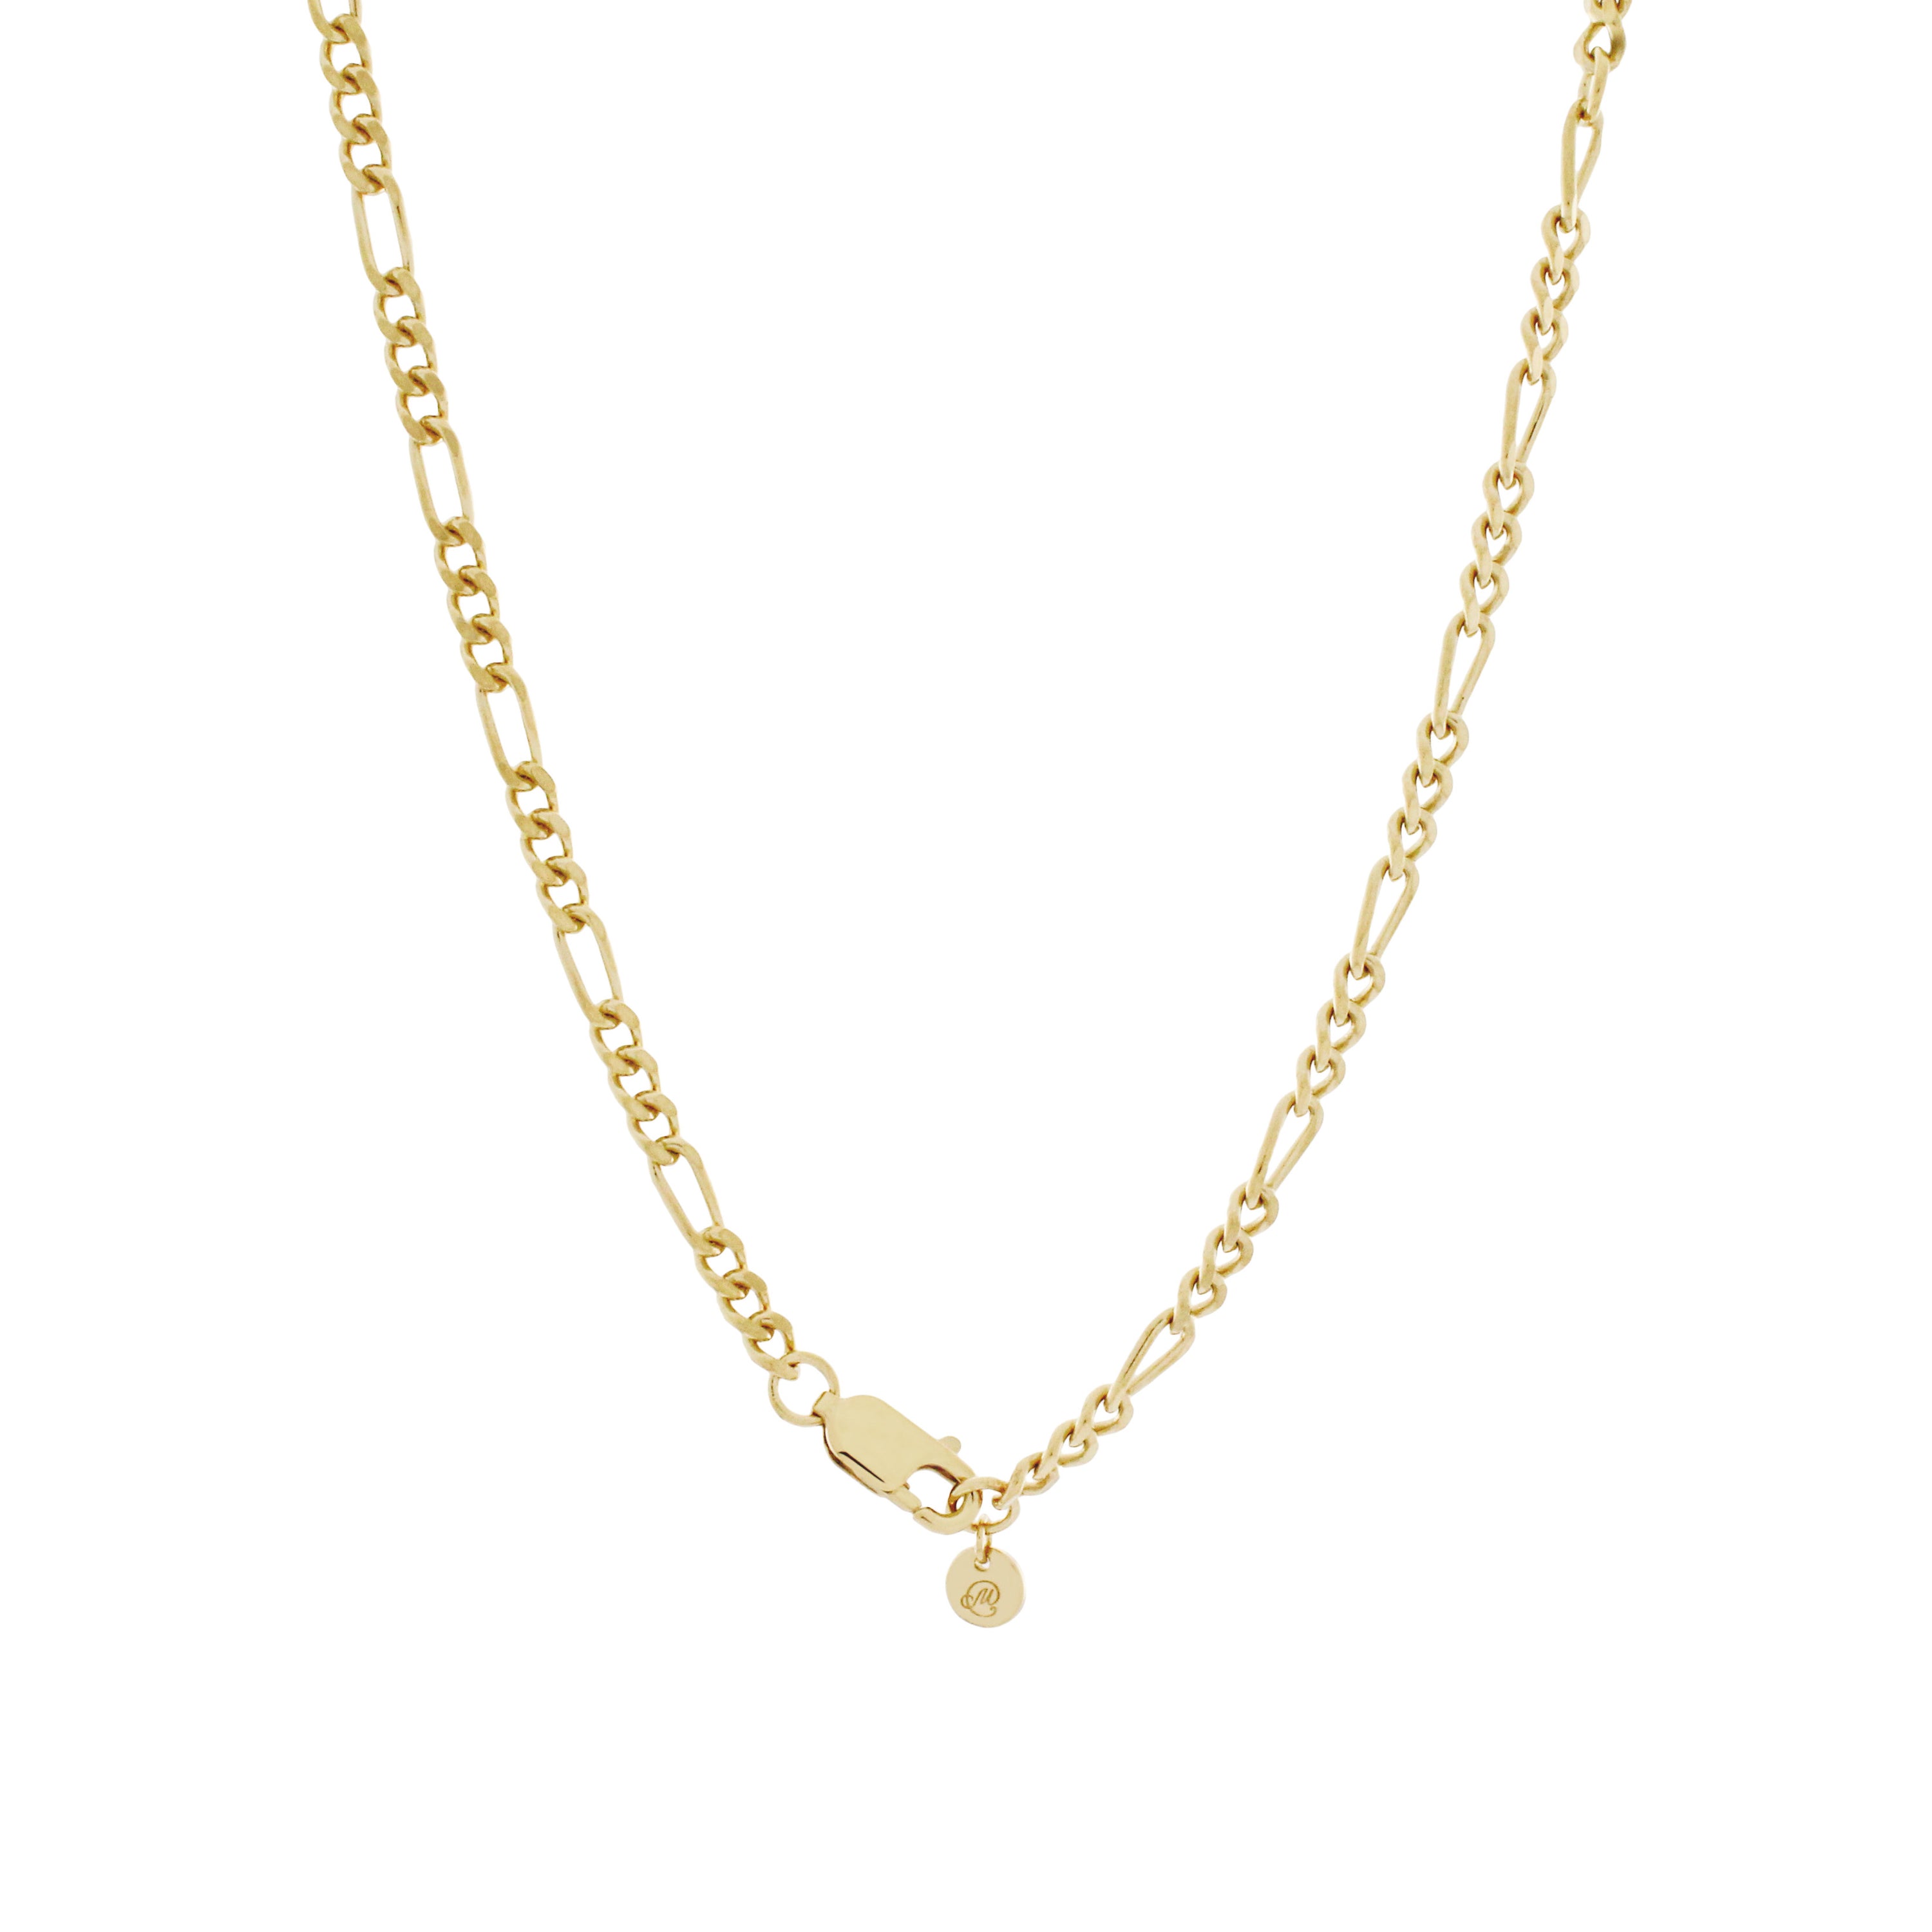 Seville Chain Necklace. Gold Vermeil